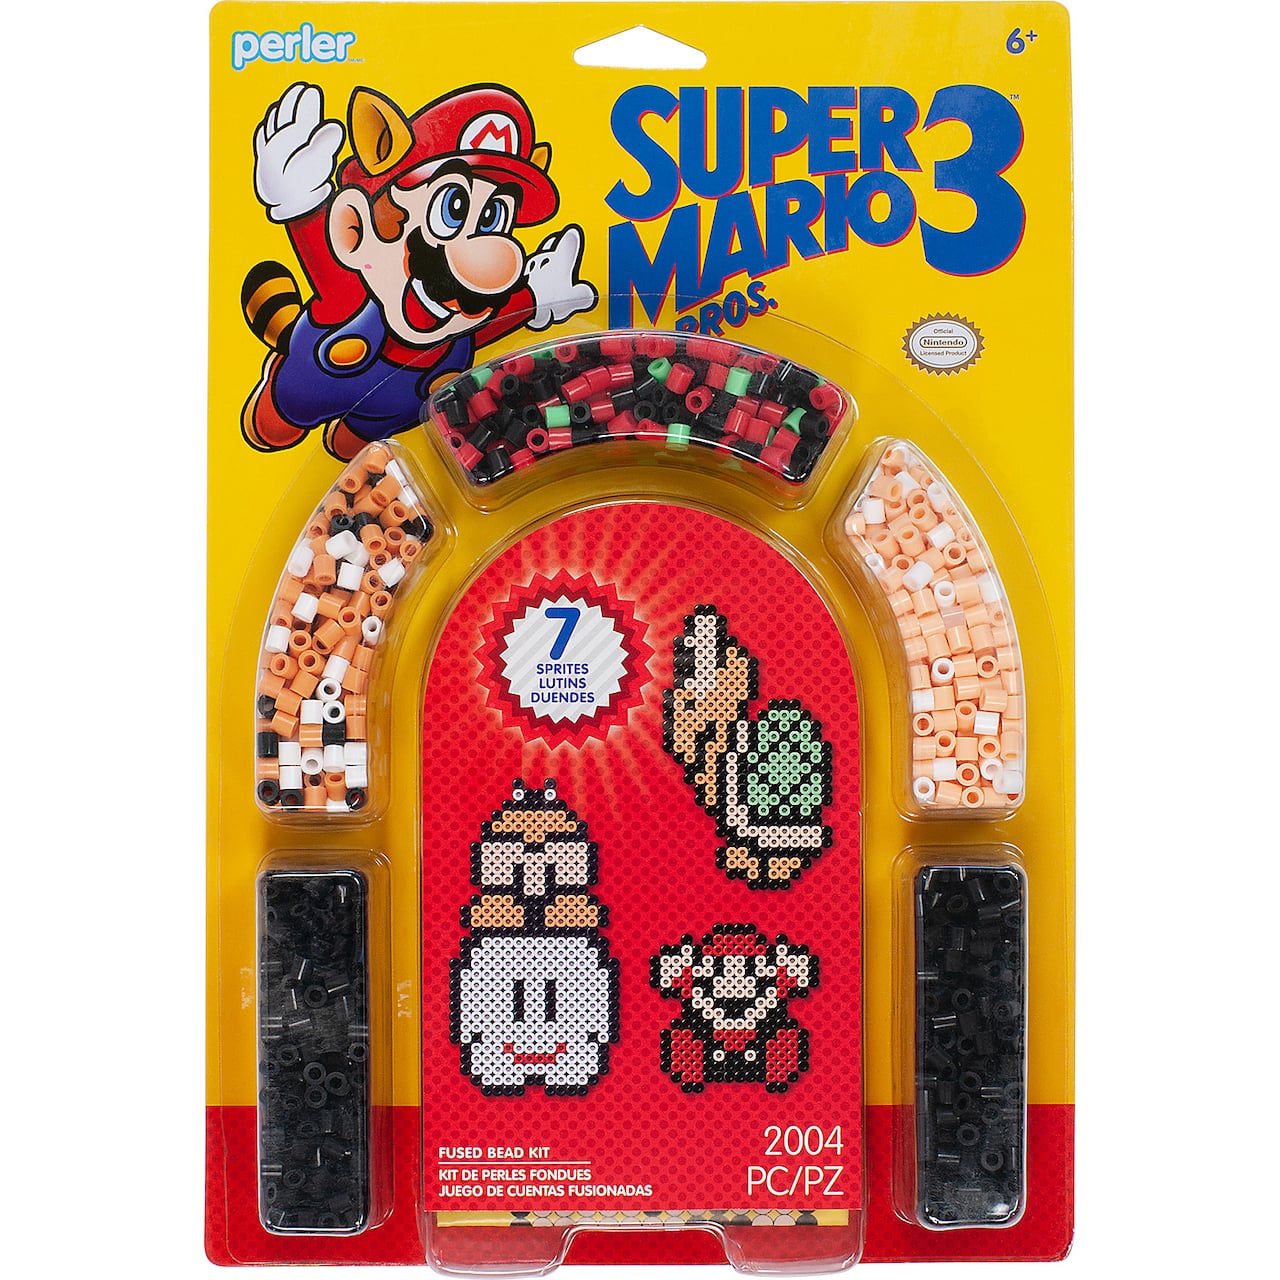 Perler™ Super Mario Bros. 3™ Fused Bead Kit